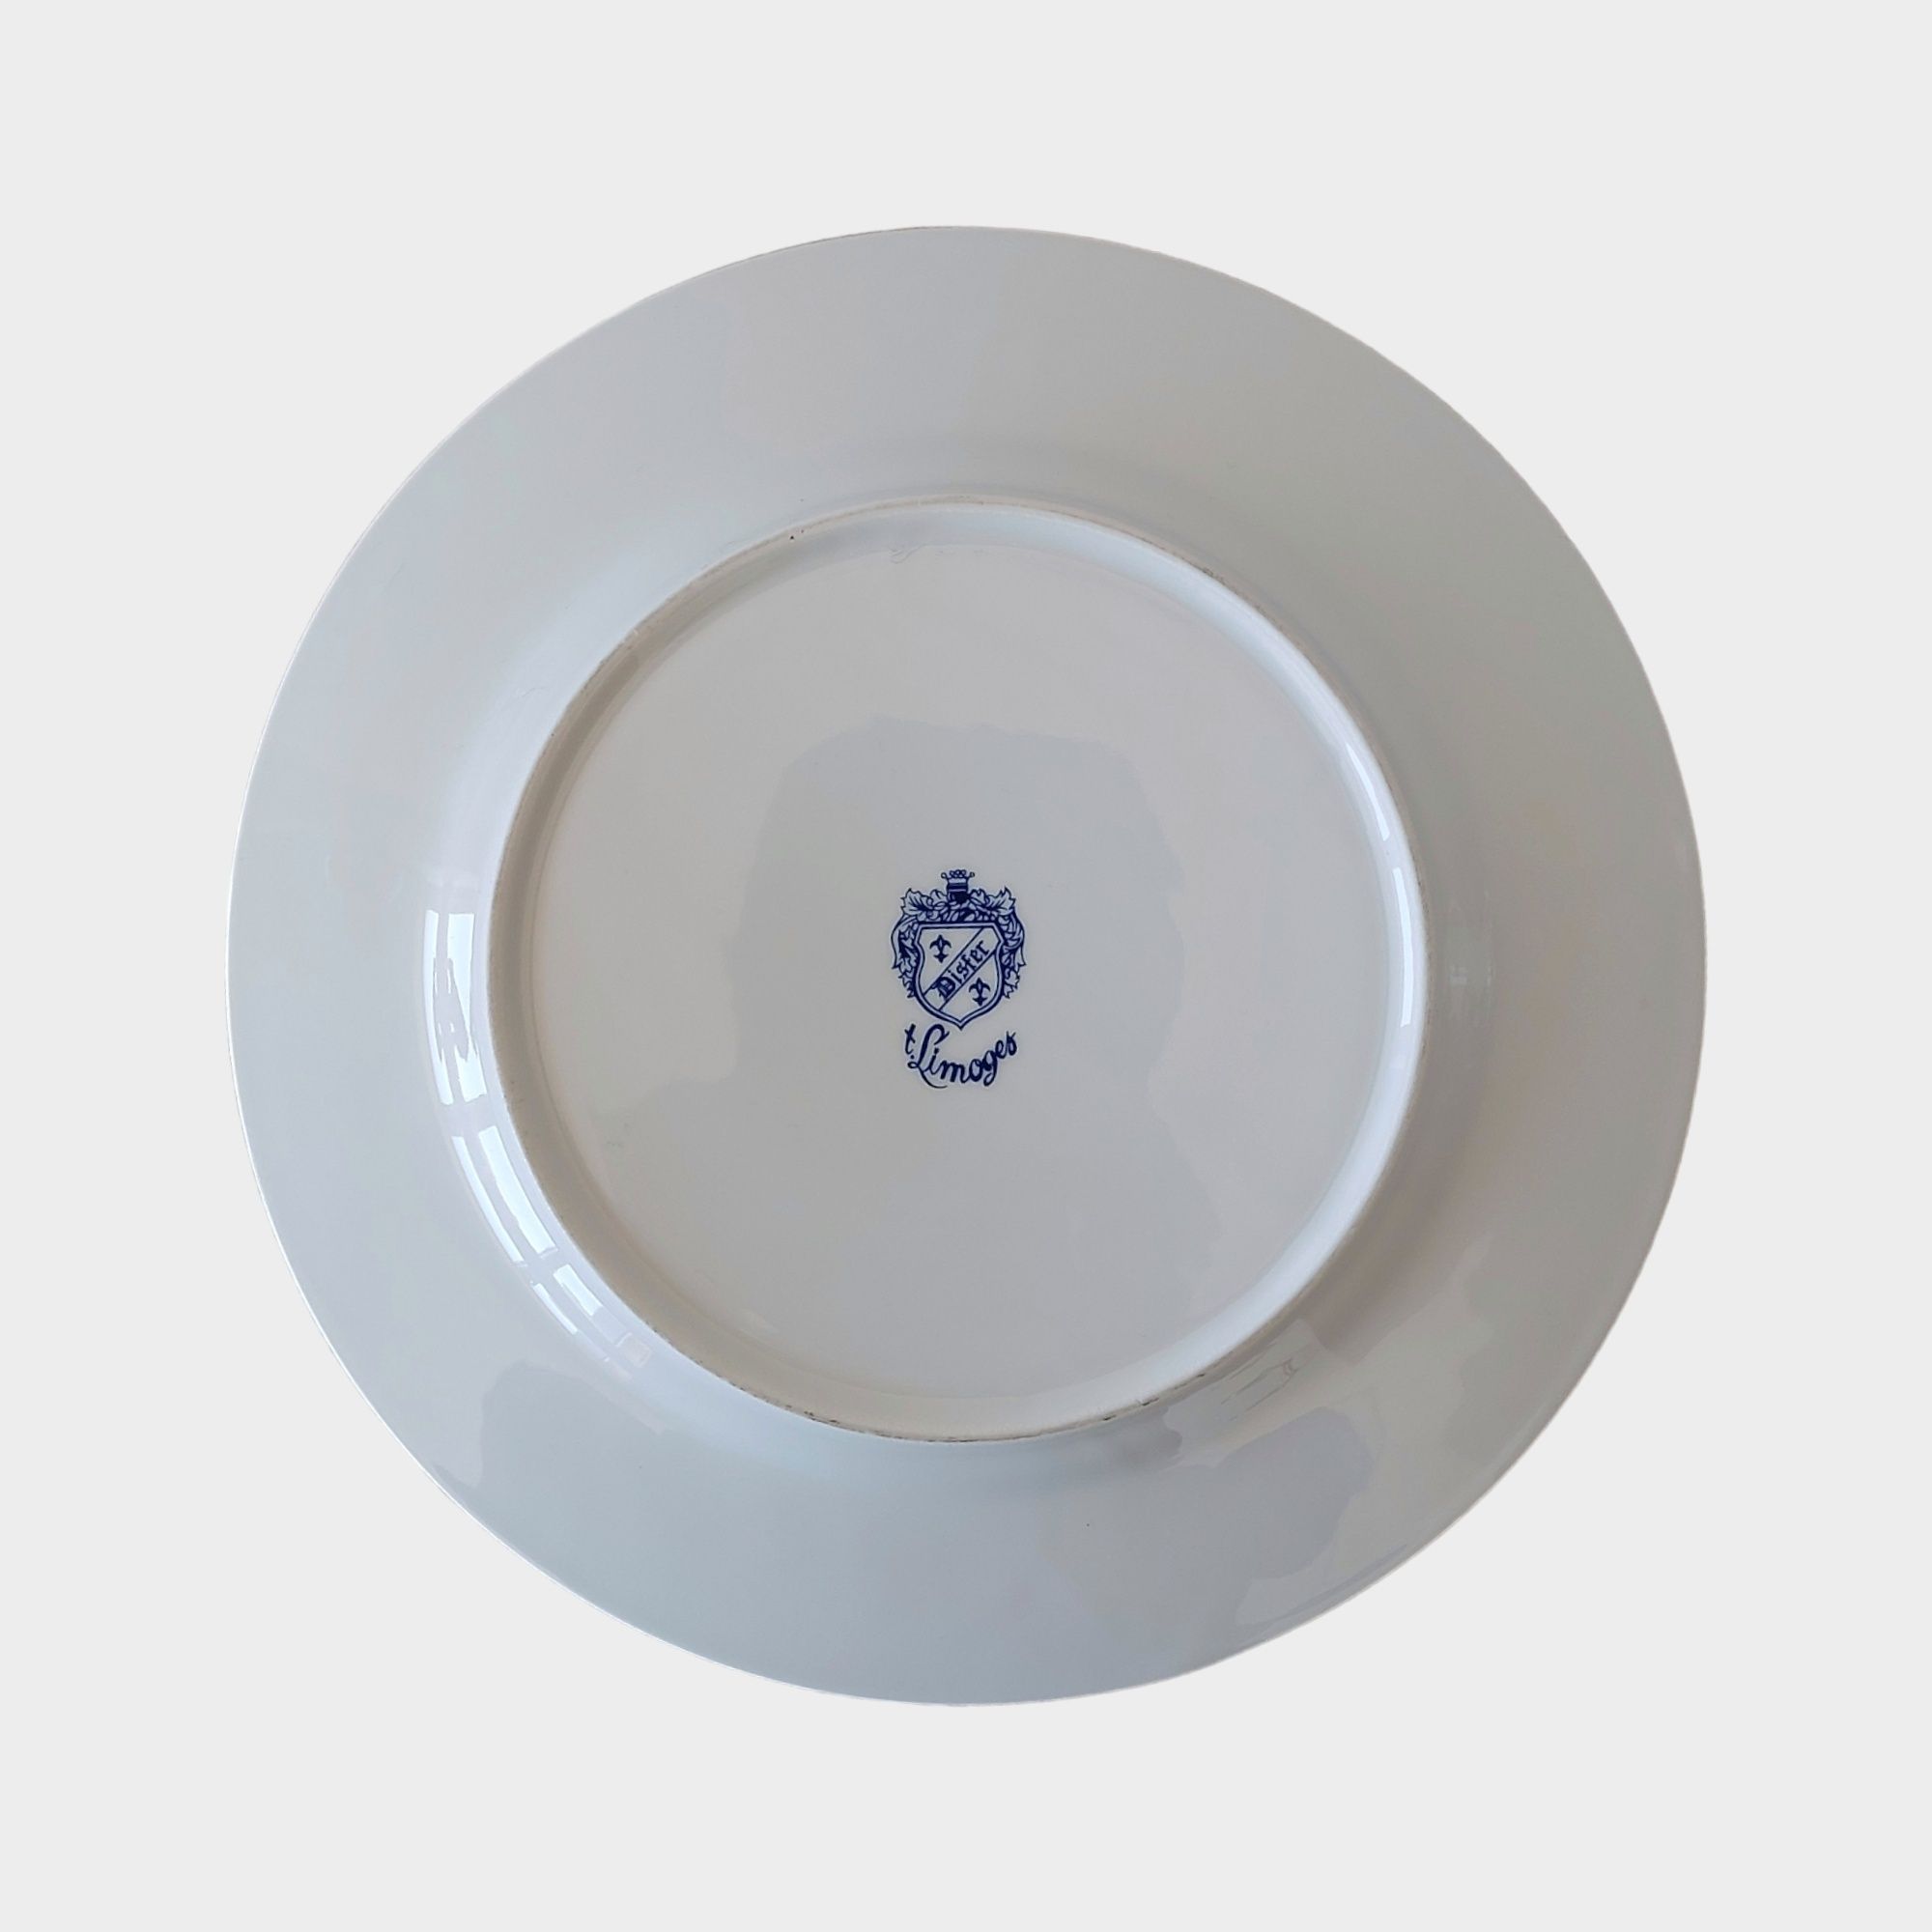 Conjunto: Cafeteira e Prato de Porcelana de Limoges (Disfer)